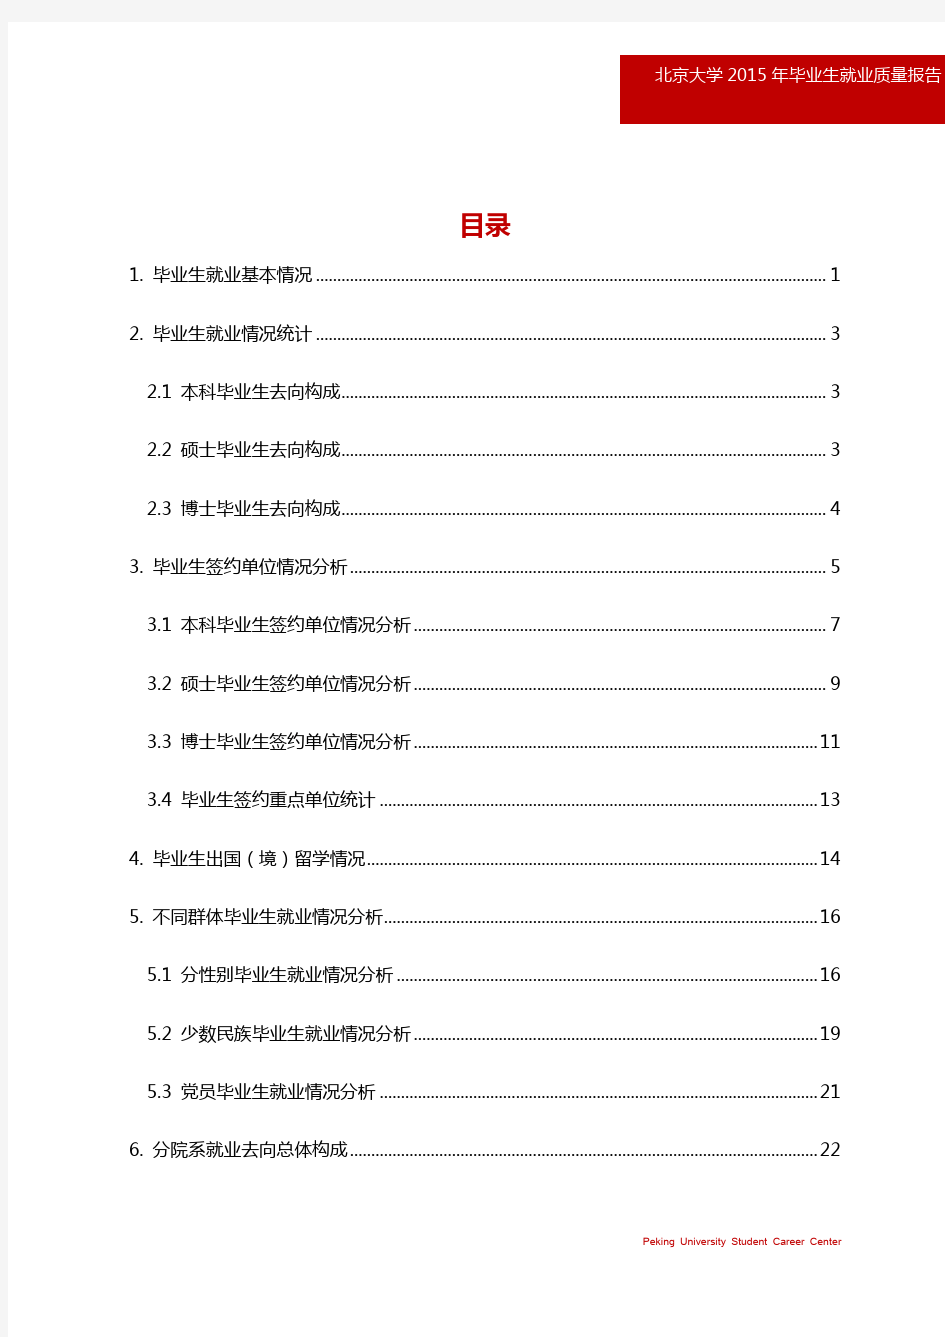 北京大学2015年毕业生就业质量年度报告